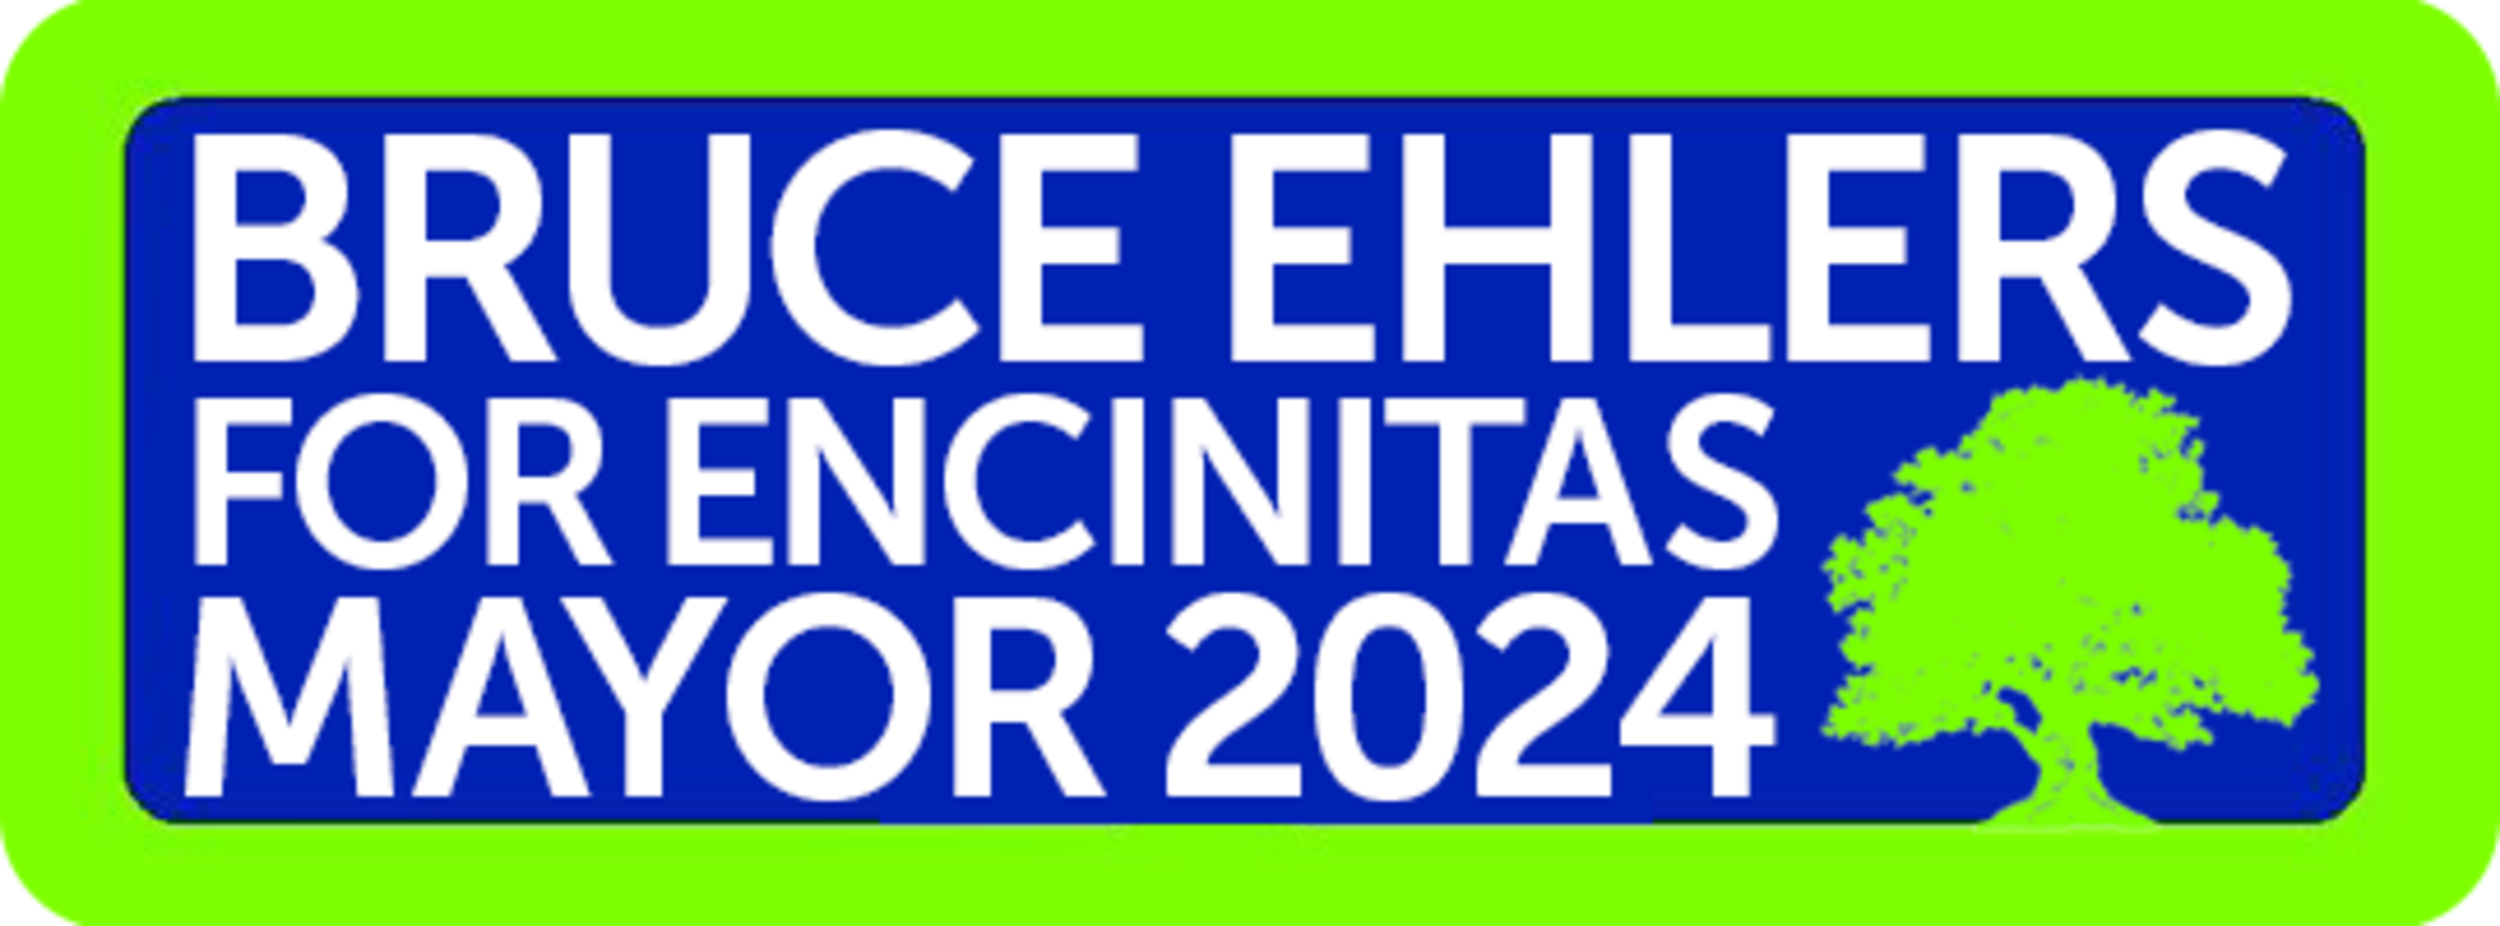 Bruce Ehlers For Encinitas Mayor 2024